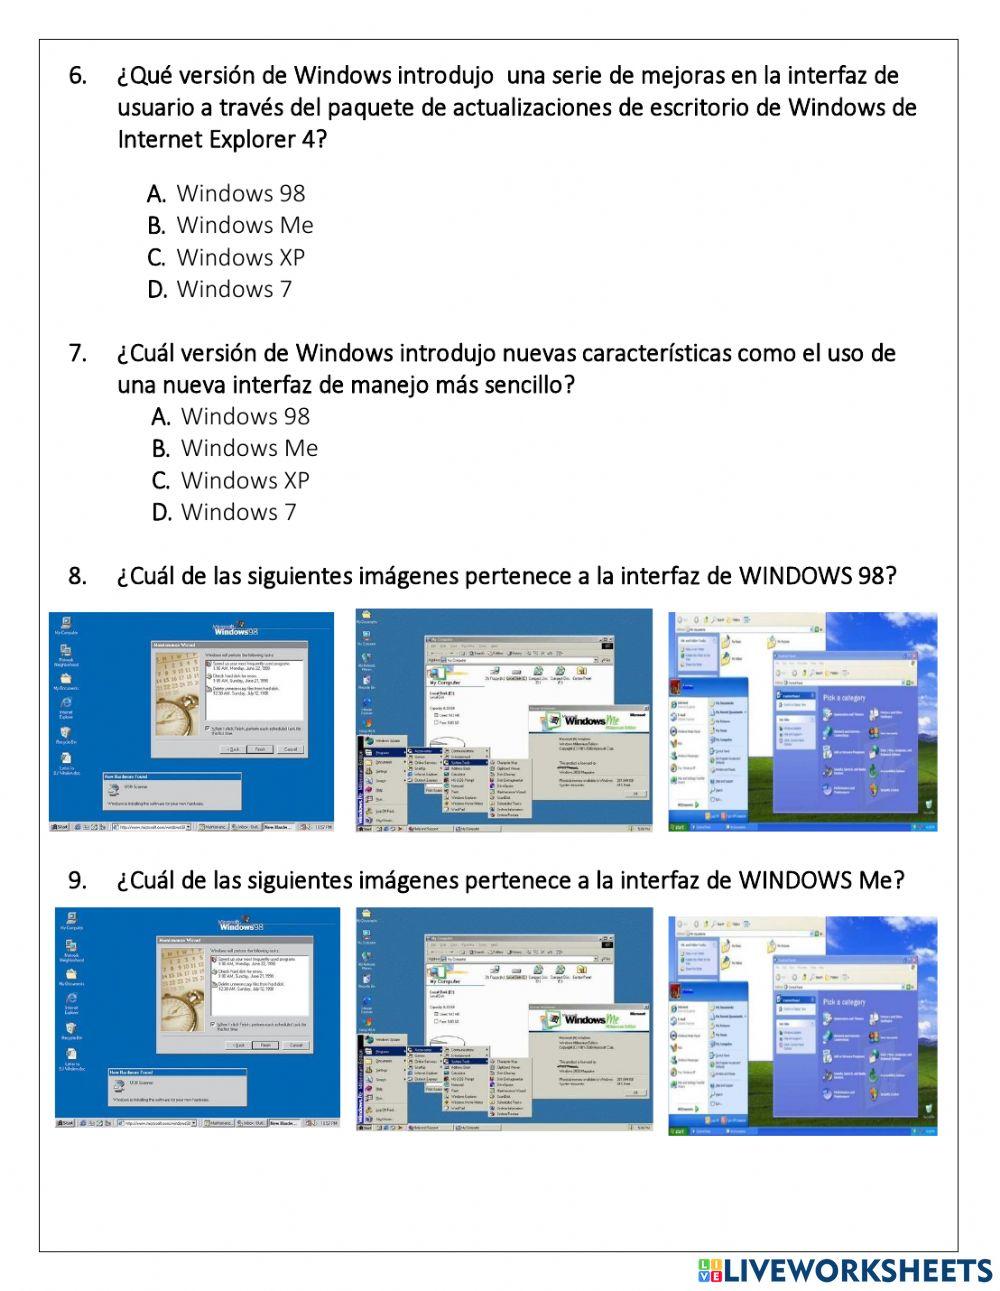 VERSIONES DE WINDOWS 98, Me Y XP